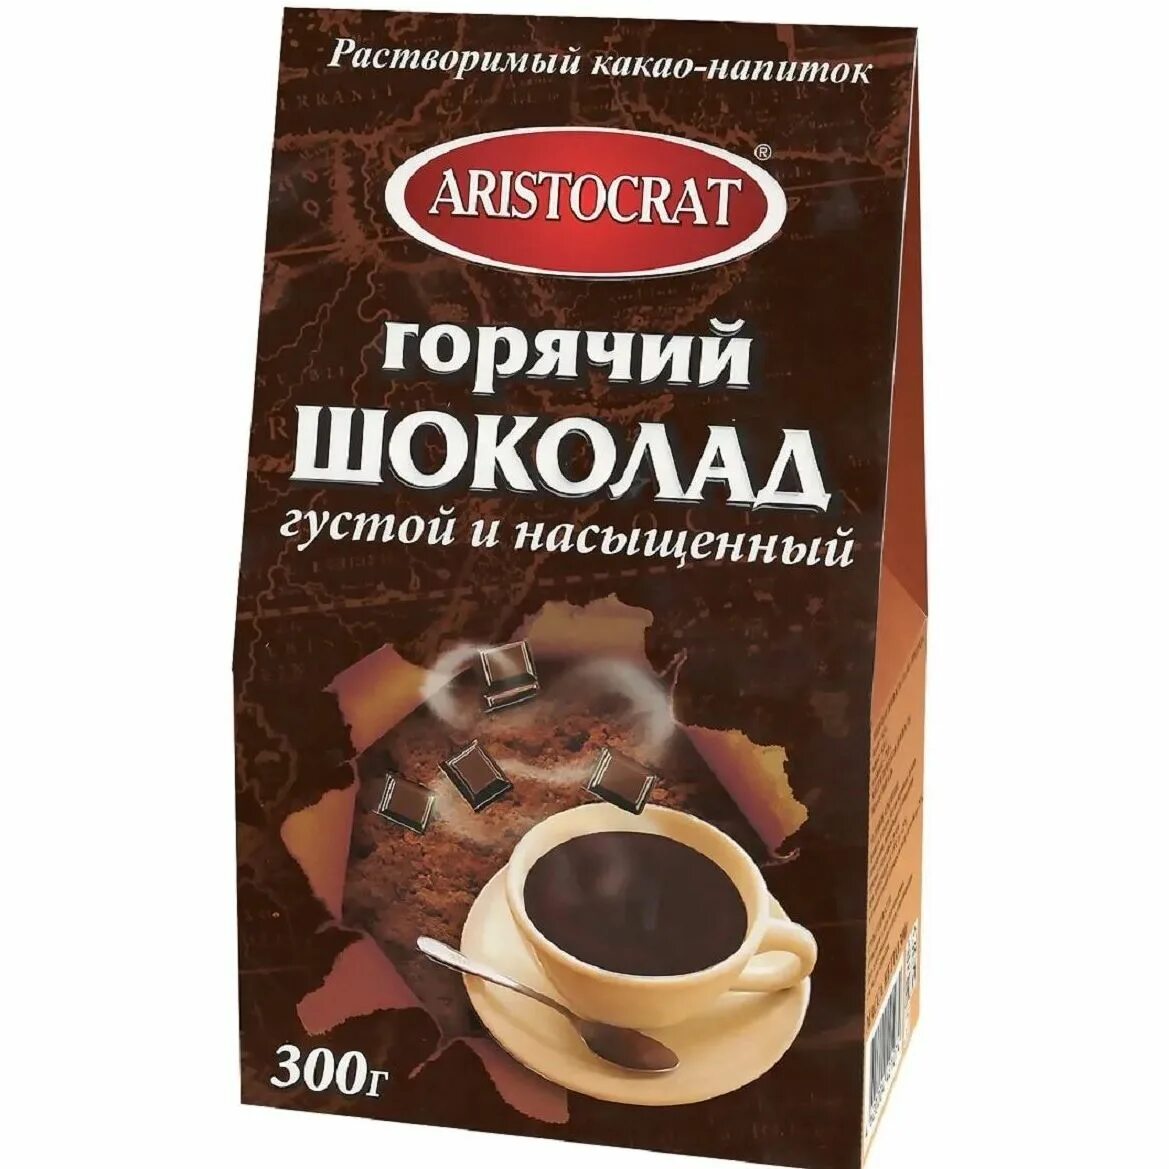 300 шоколада. Горячий шоколад Аристократ 300г. Горячий шоколад Aristocrat Premium 1000г. Aristocrat горячий шоколад класс 300г. Растворимый какао Аристократ.